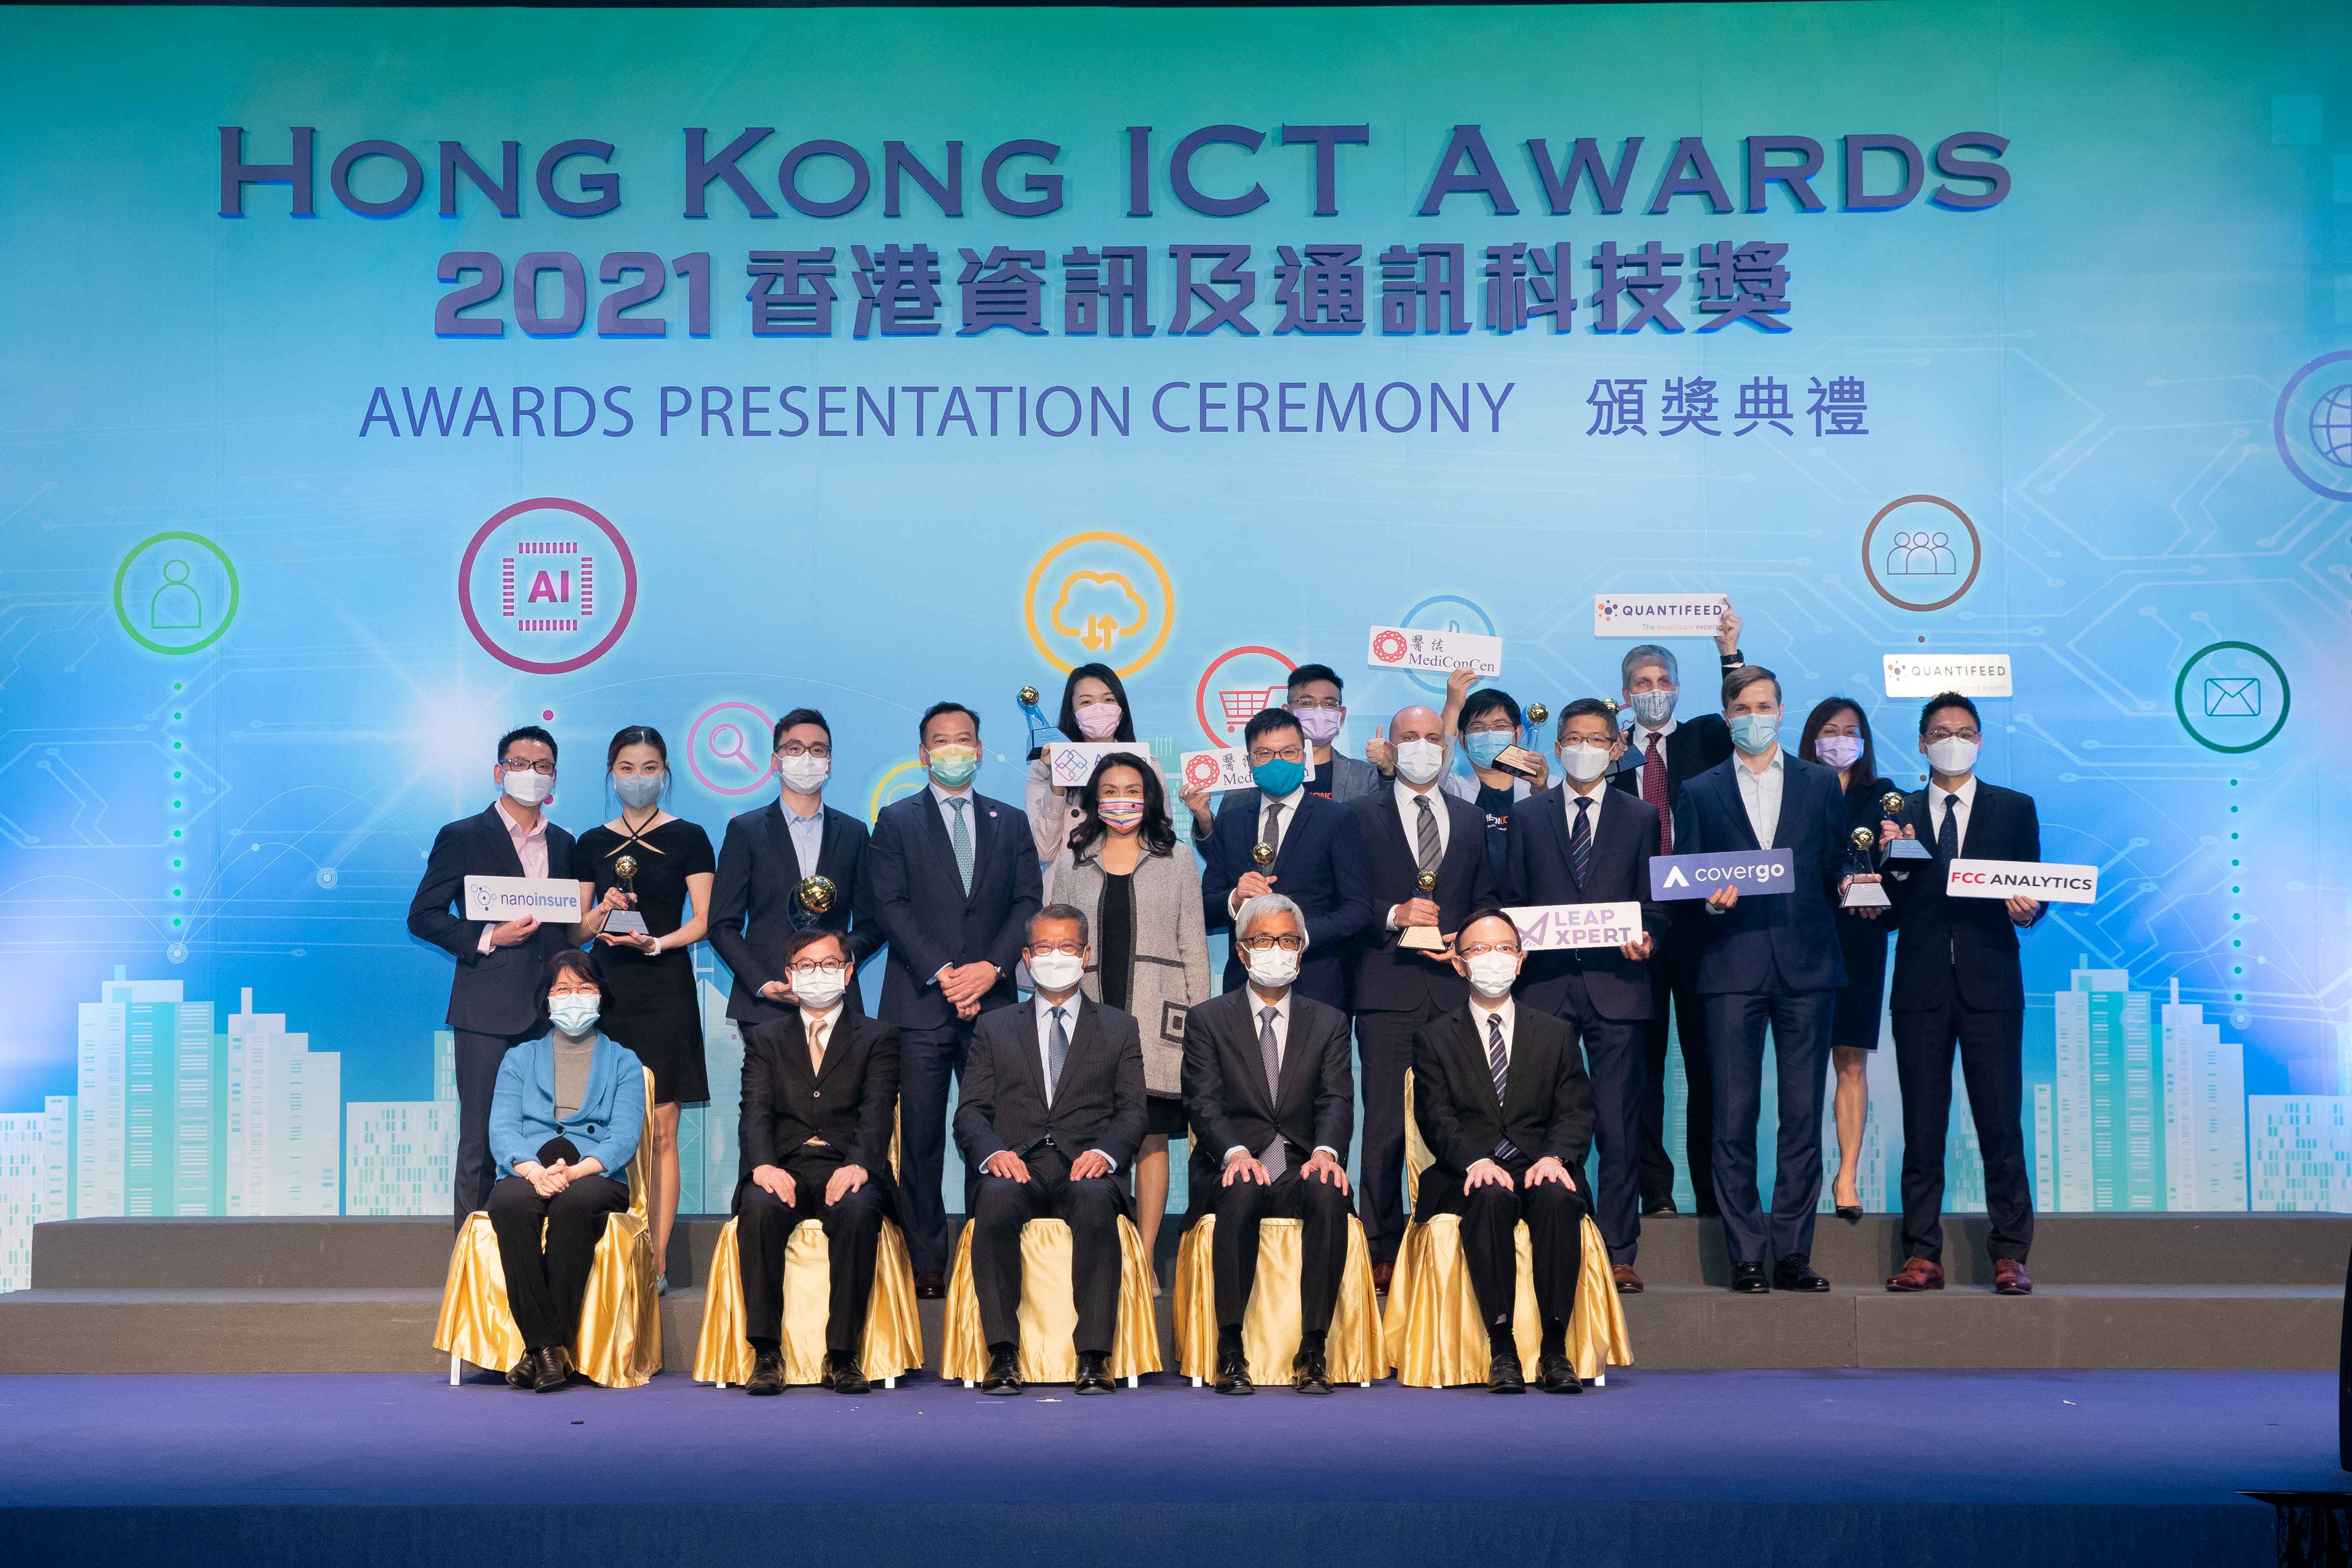 Hong Kong ICT Awards 2021 FinTech Award Winners Group Photo